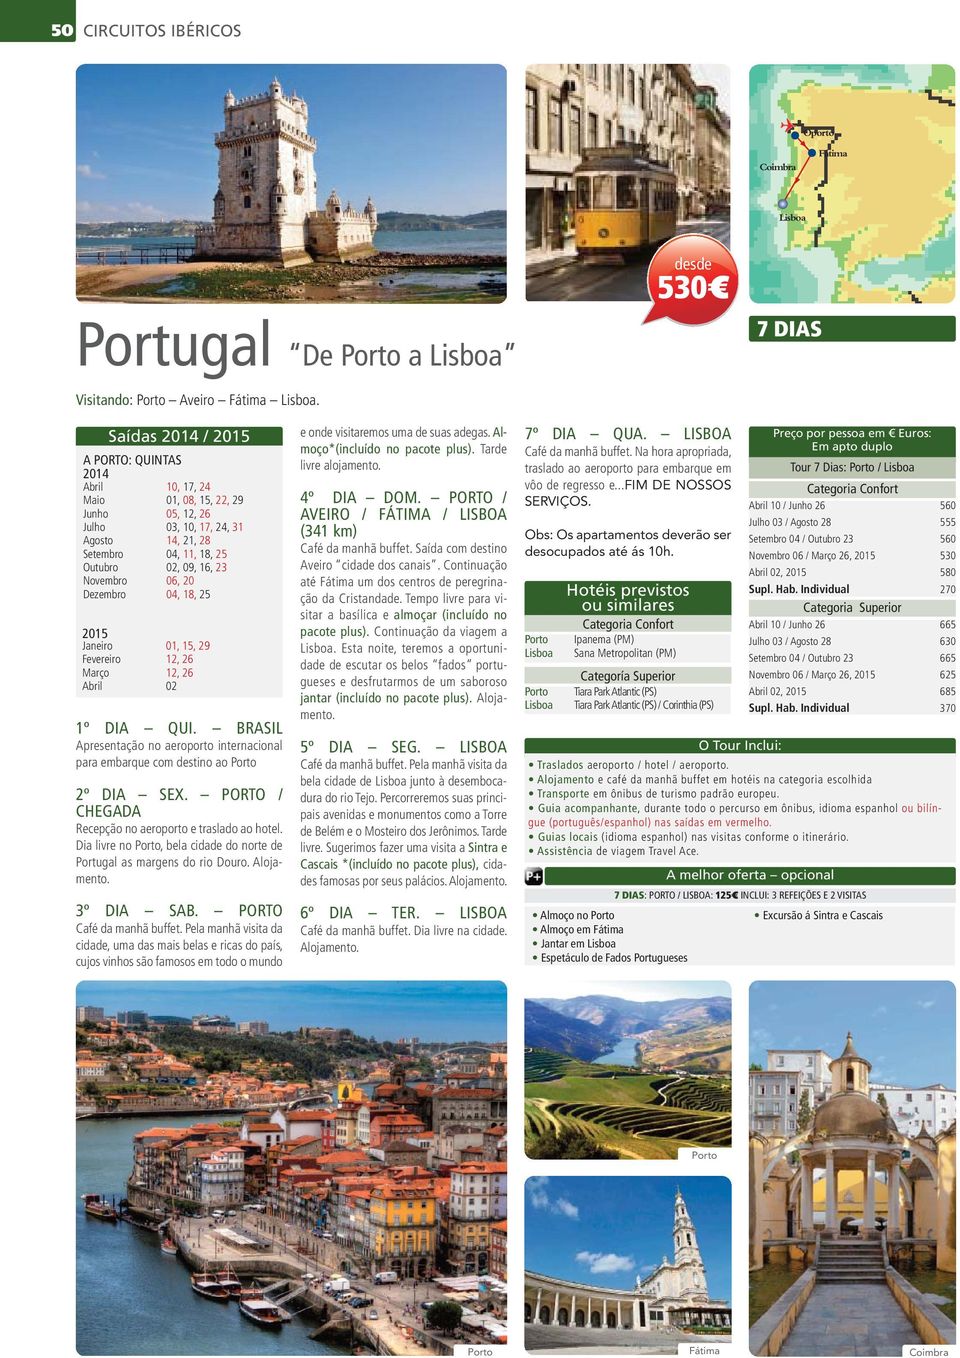 BRASIL para embarque com destino ao 2º DIA SEX. PORTO / CHEGADA Dia livre no, bela cidade do norte de Portugal as margens do rio Douro. 3º DIA SAB.